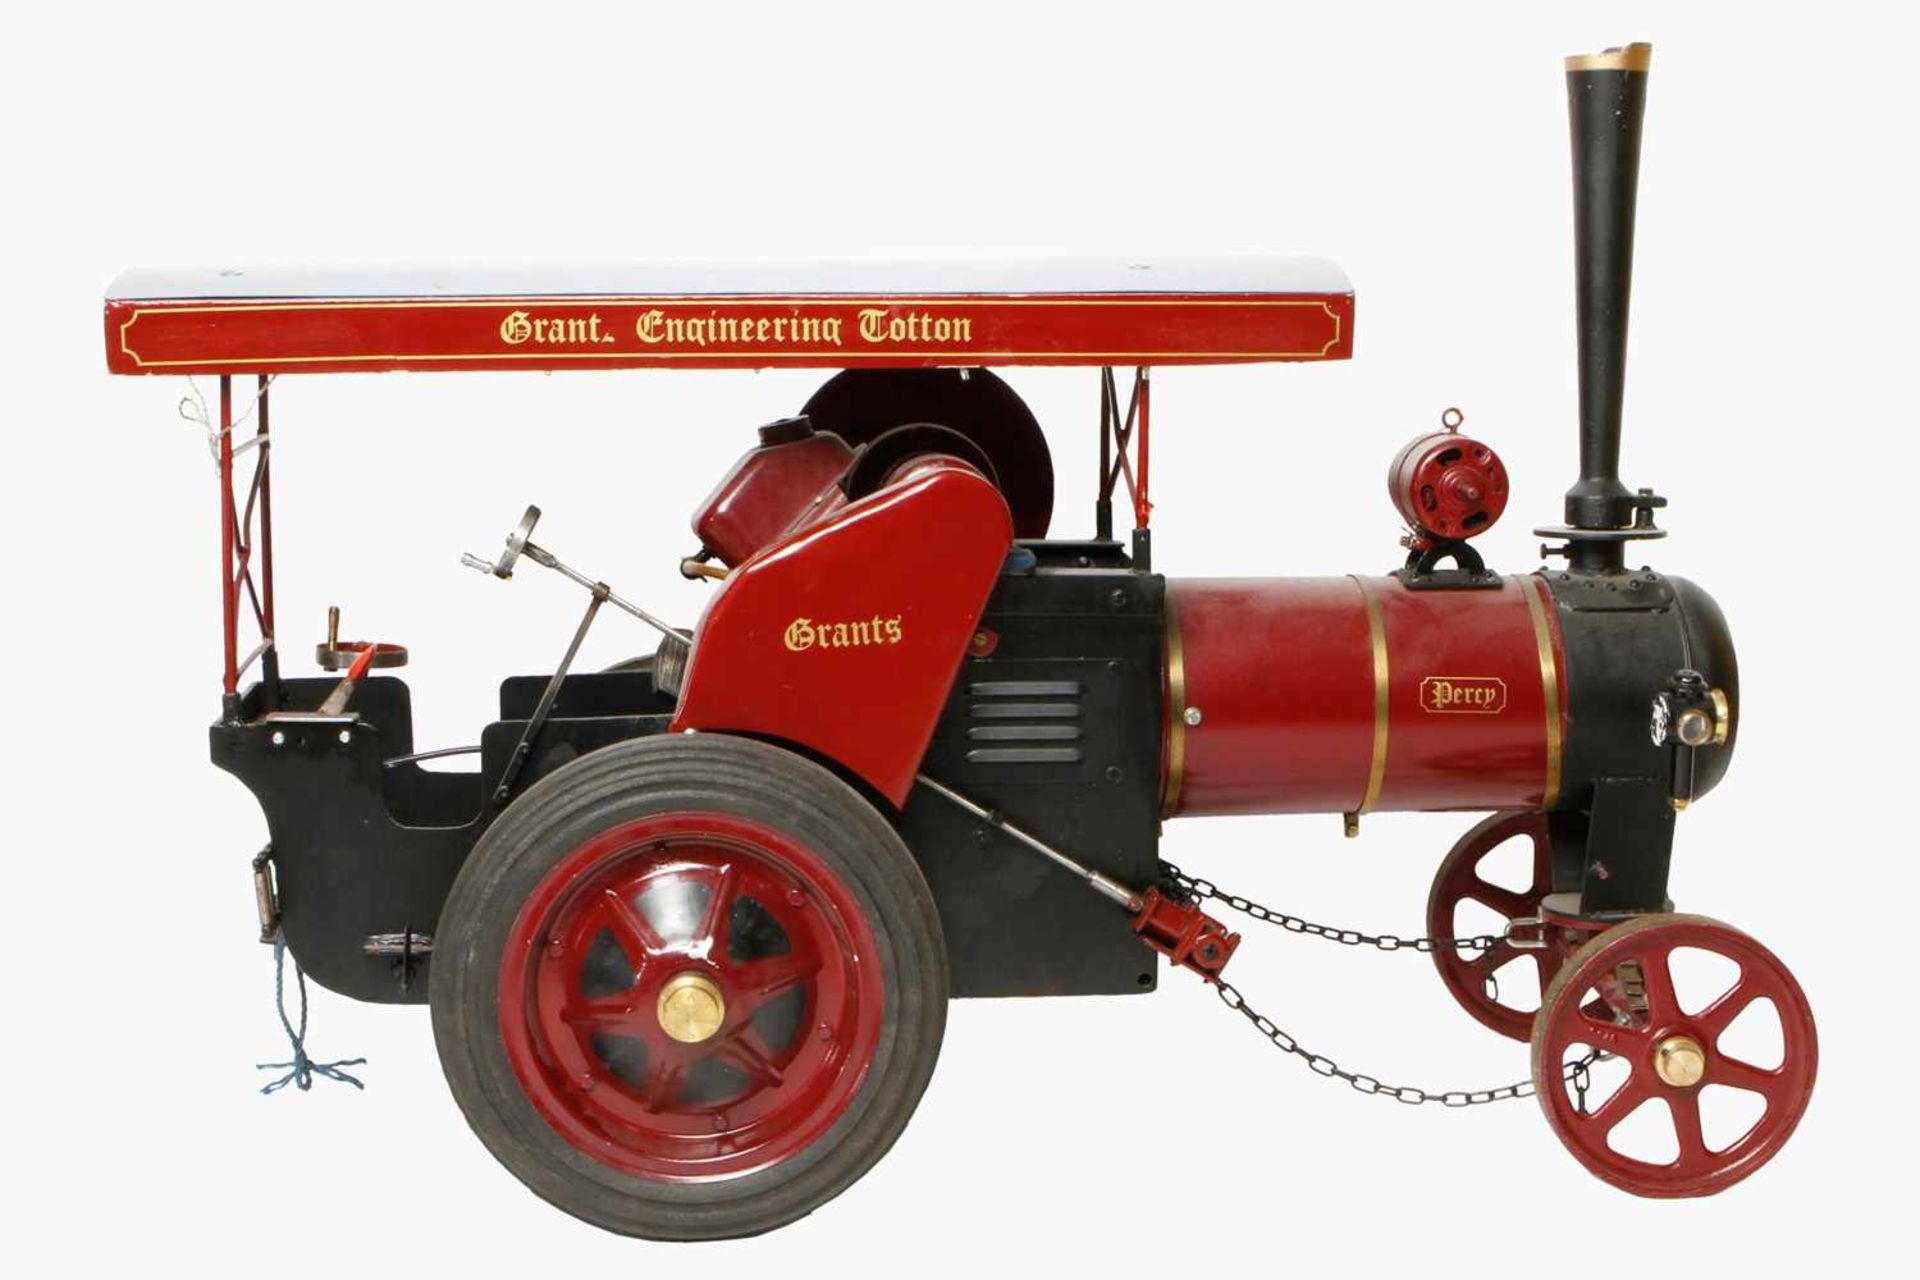 Große fahrbare Lokomobile "Grants Engineering Cotton", zum Ziehen eines Kinderzuges, gummibereift,